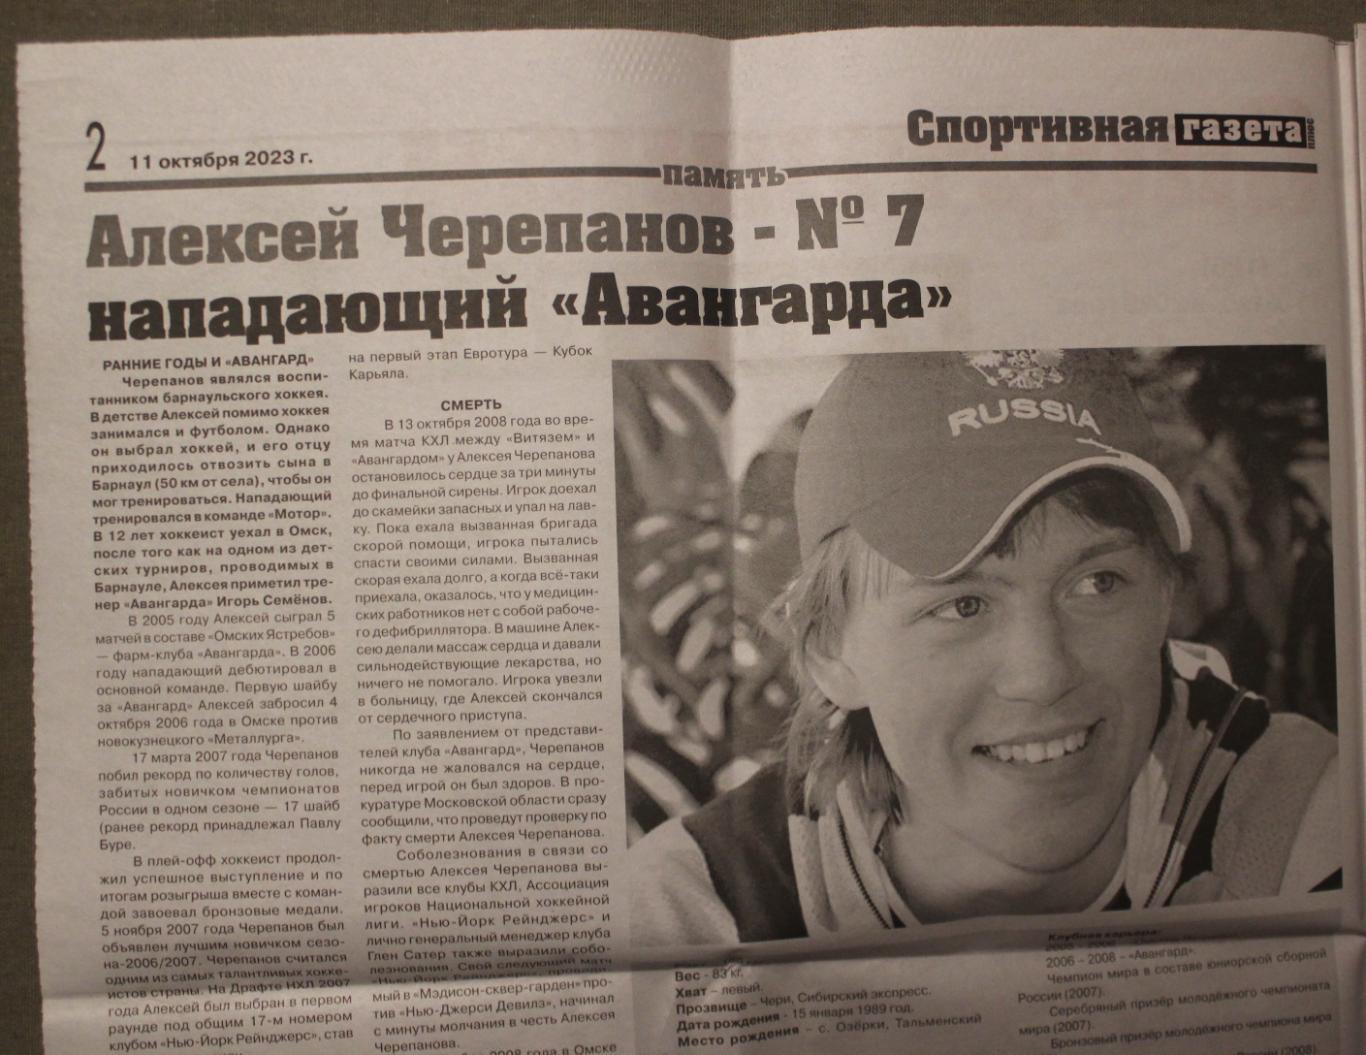 Спортивная газета Омск № 5 (126) 11.10.2023 2